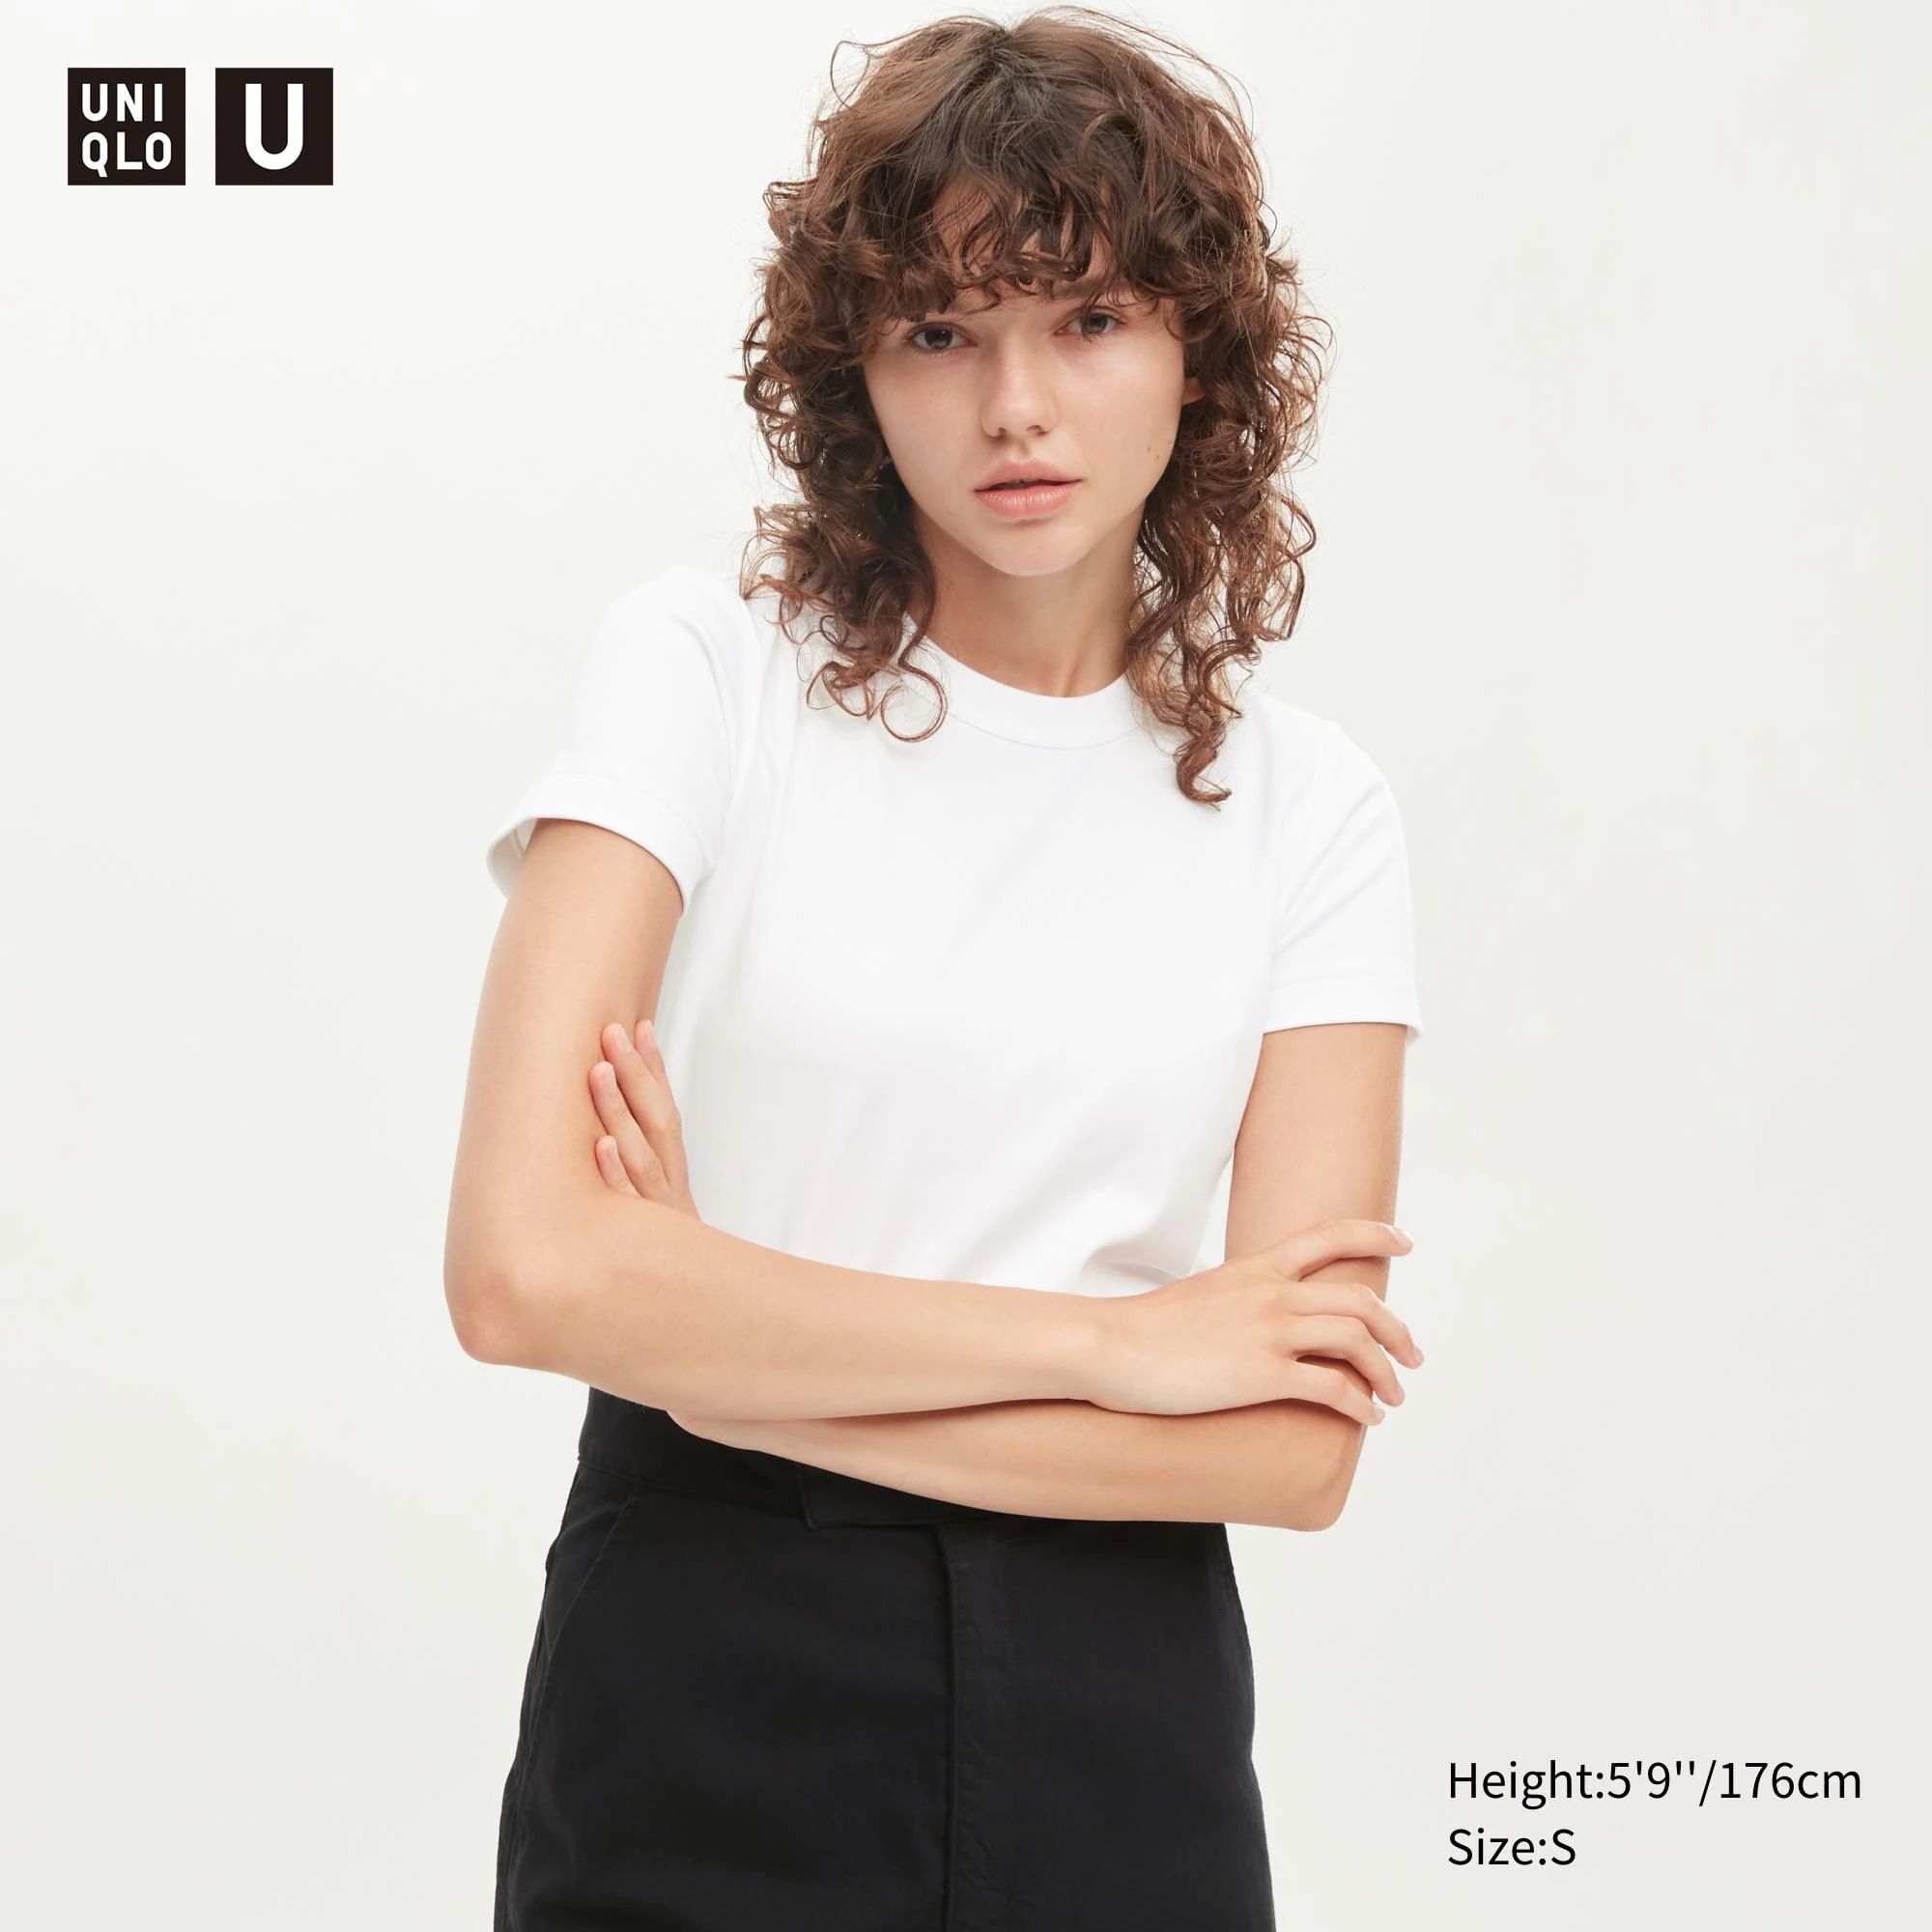 U Crew Neck Short-Sleeve T-Shirt (Women) | UNIQLO US | UNIQLO (US)